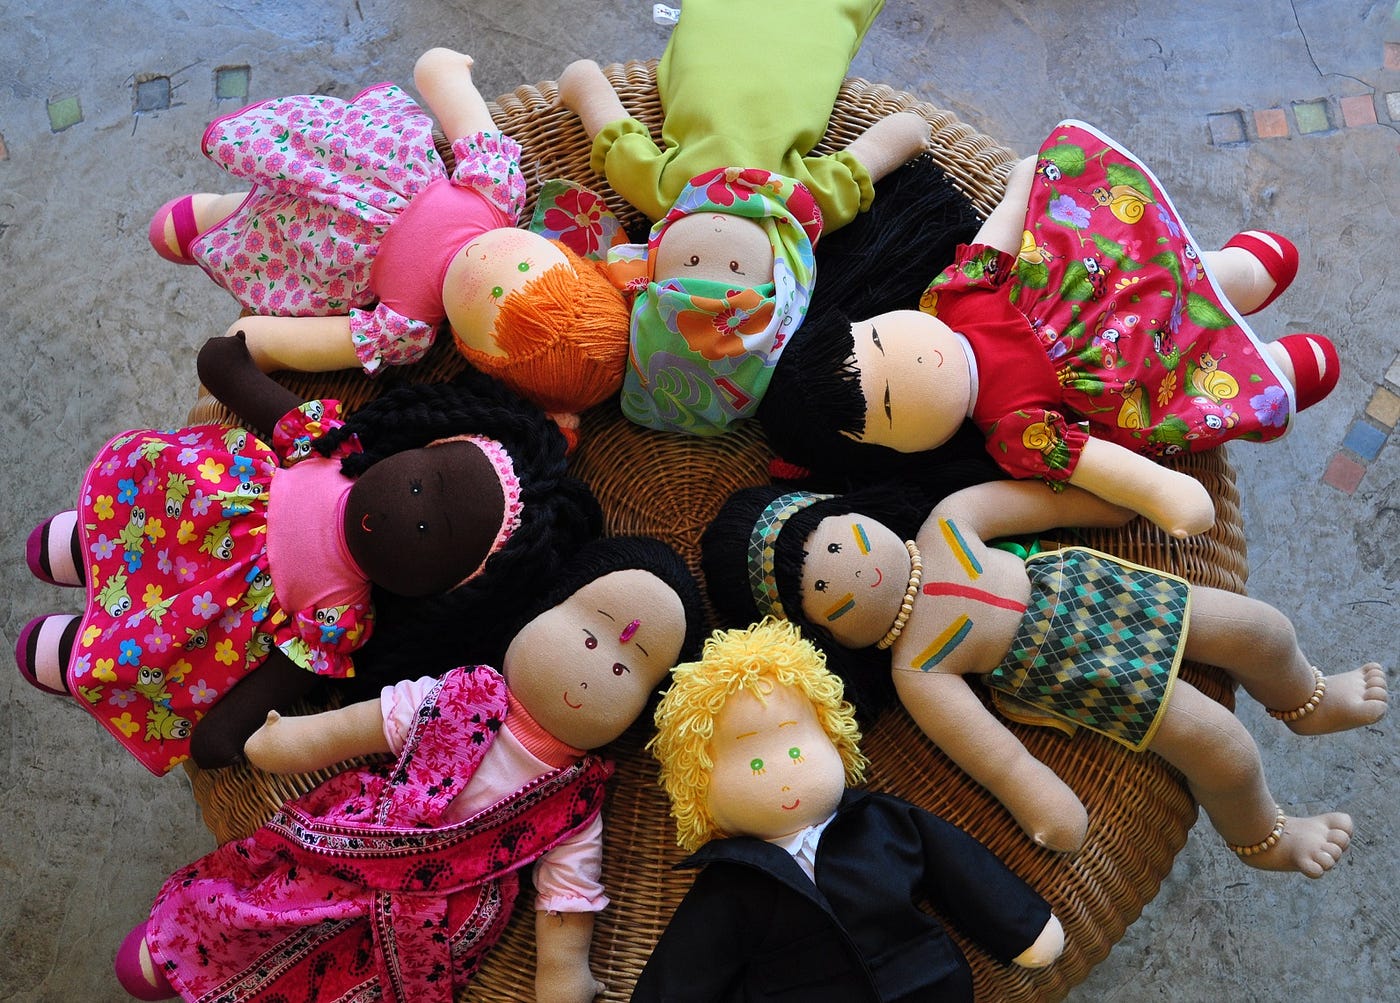 Fabricantes criam bonecas para além da infância - WSJ